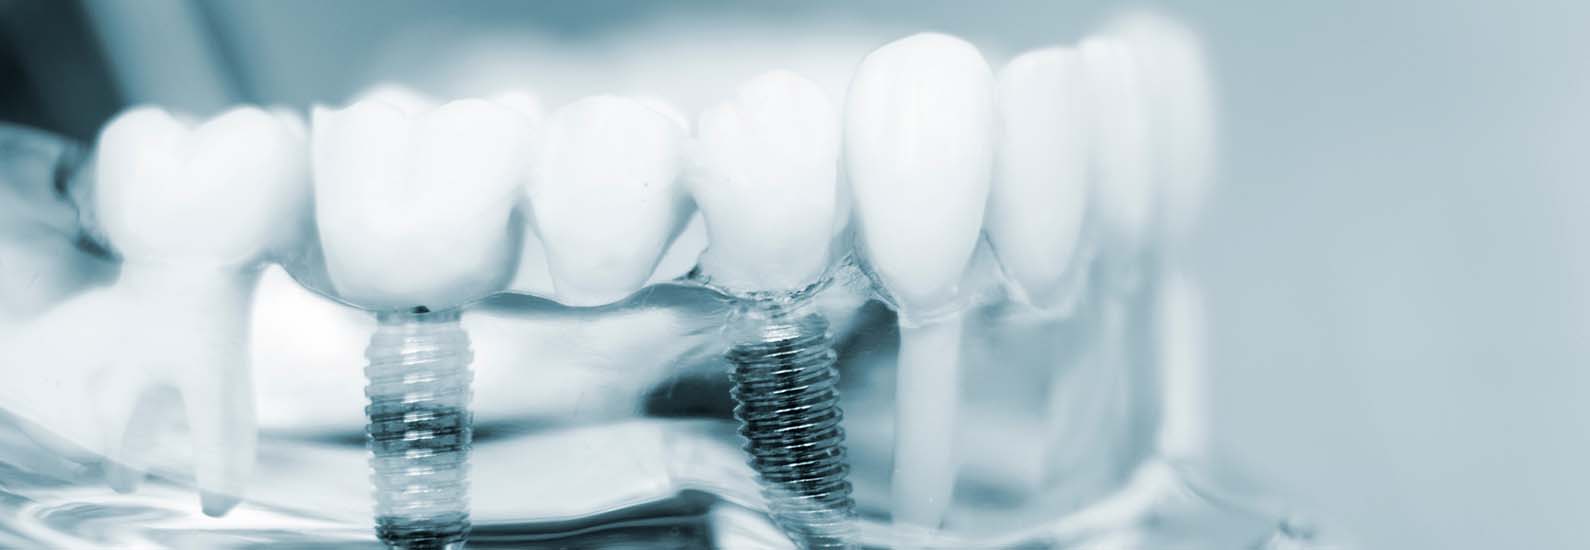 Implantate: Fragen und Antworten - Zahnarzt Bregenz